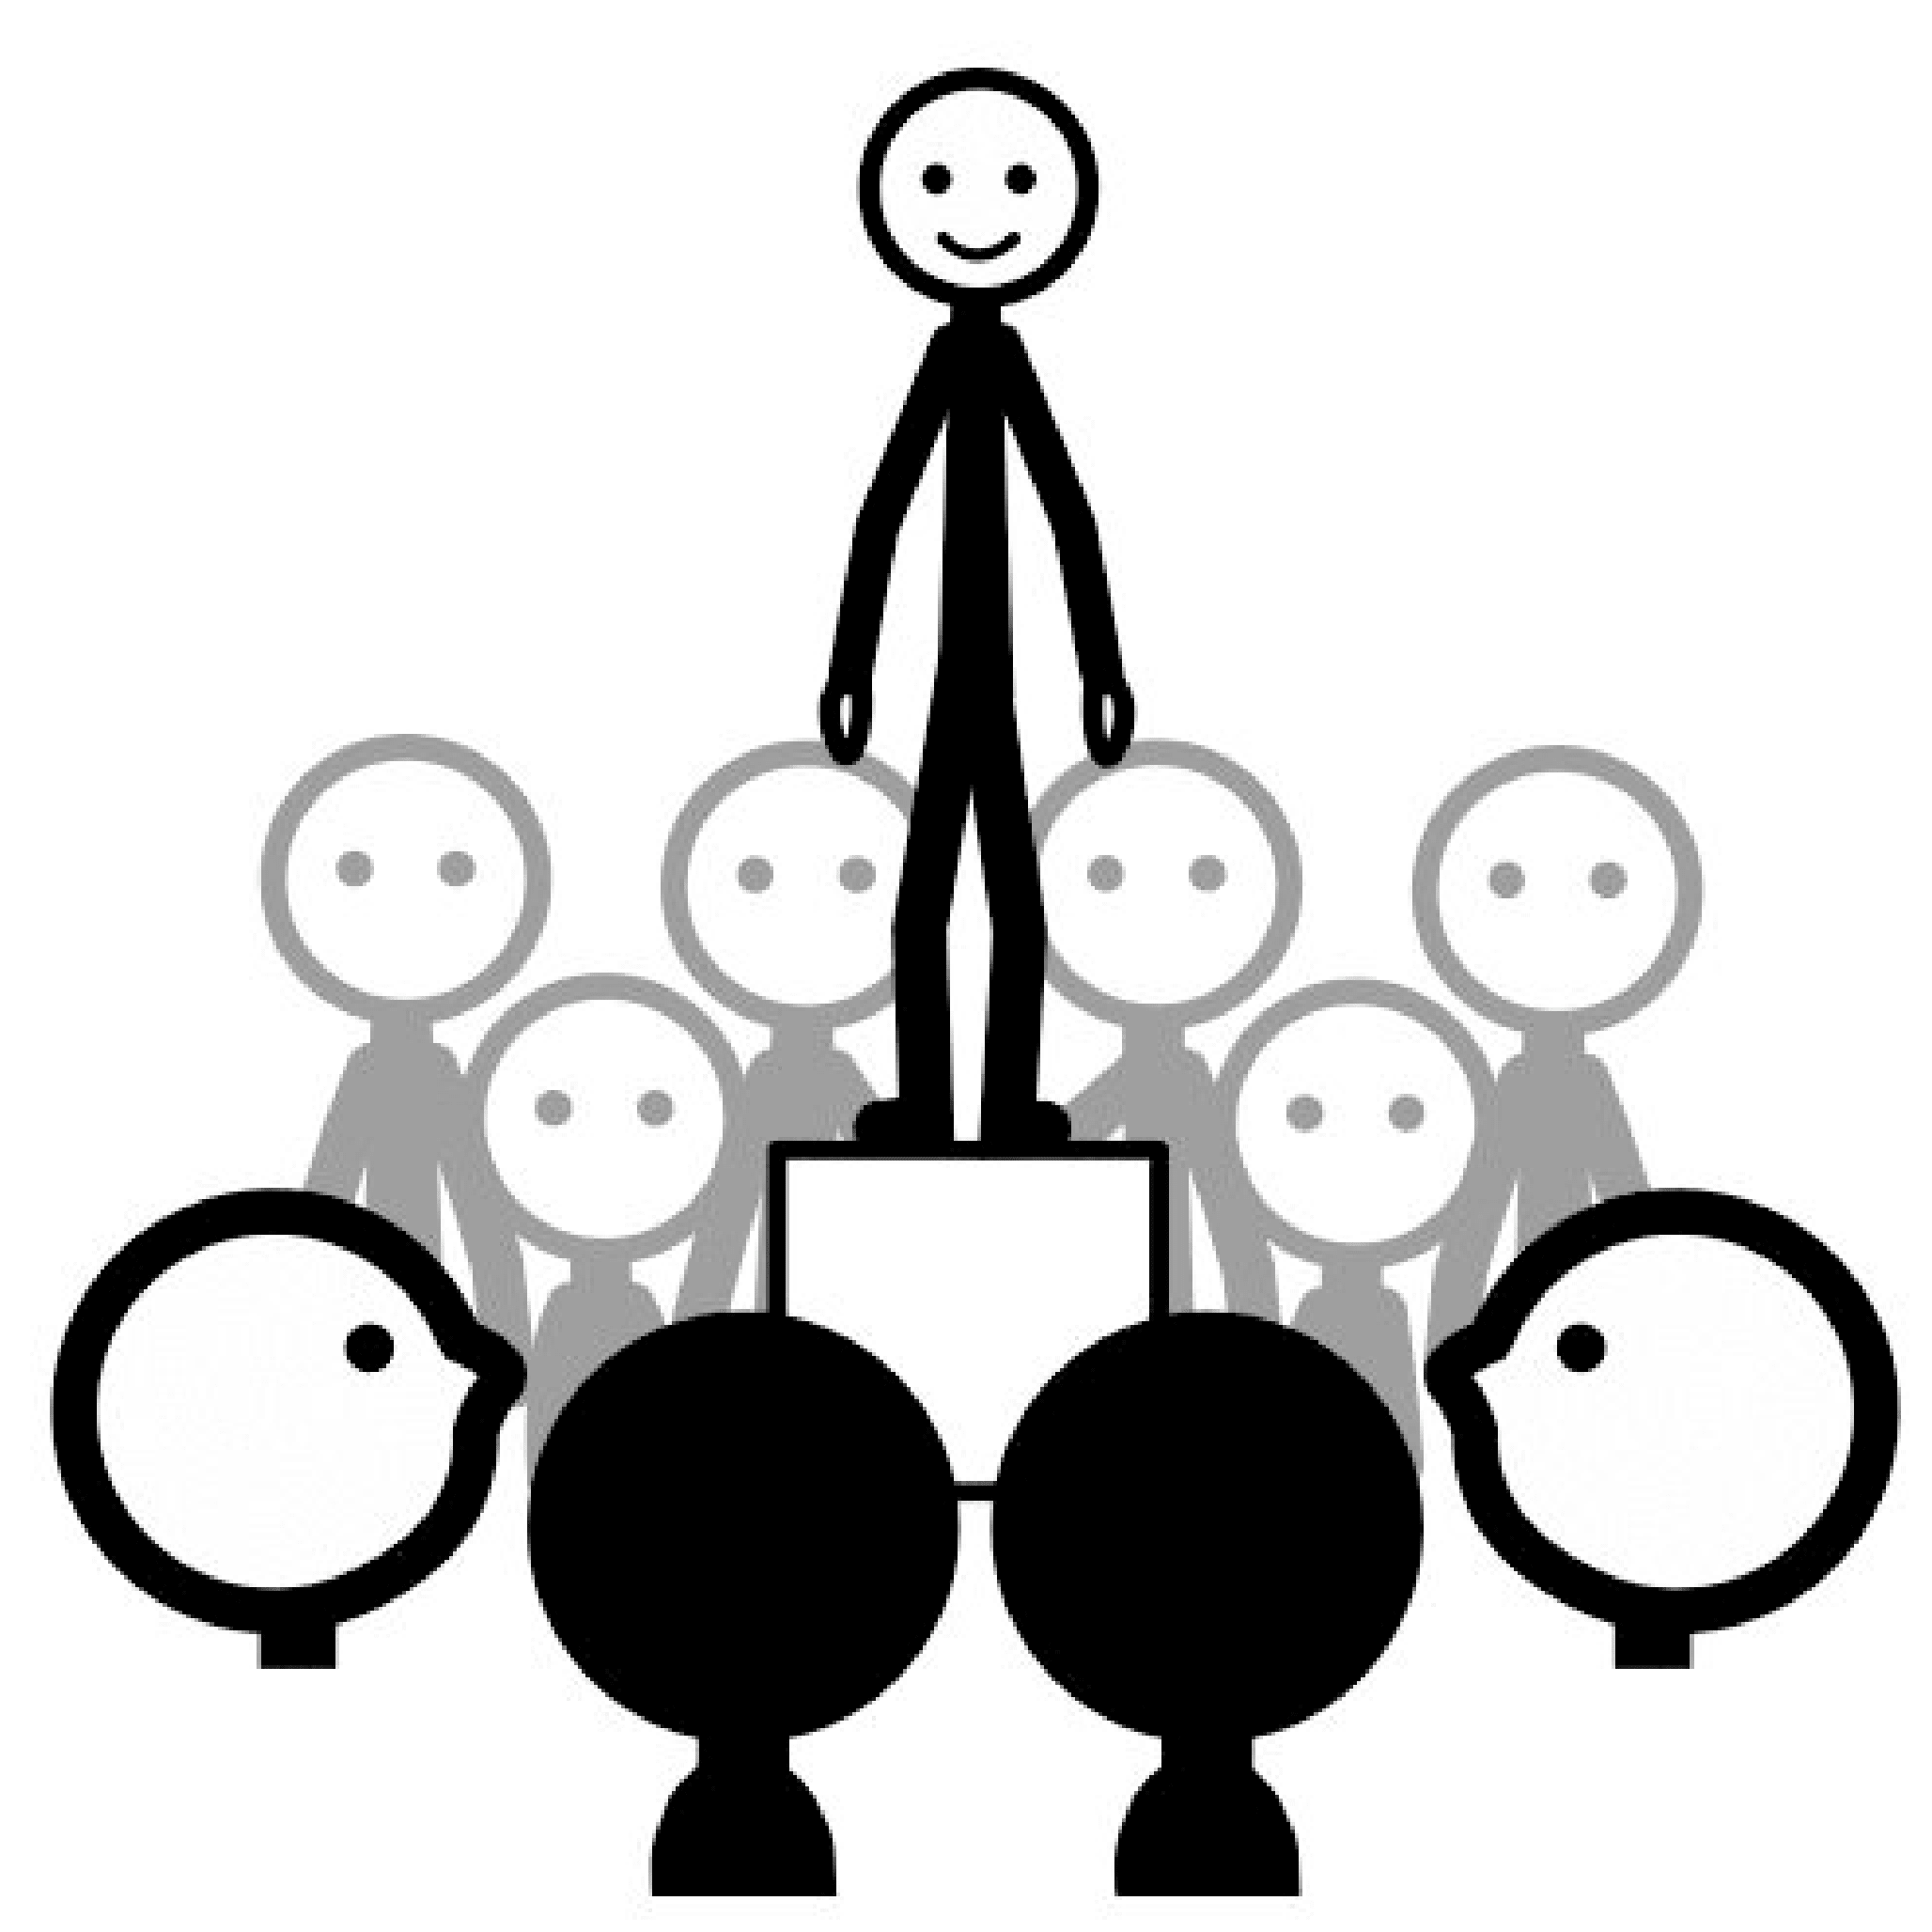 Una persona en el centro sonríe sobre un pedestal mientras alrededor, en círculo, diez personas la miran.